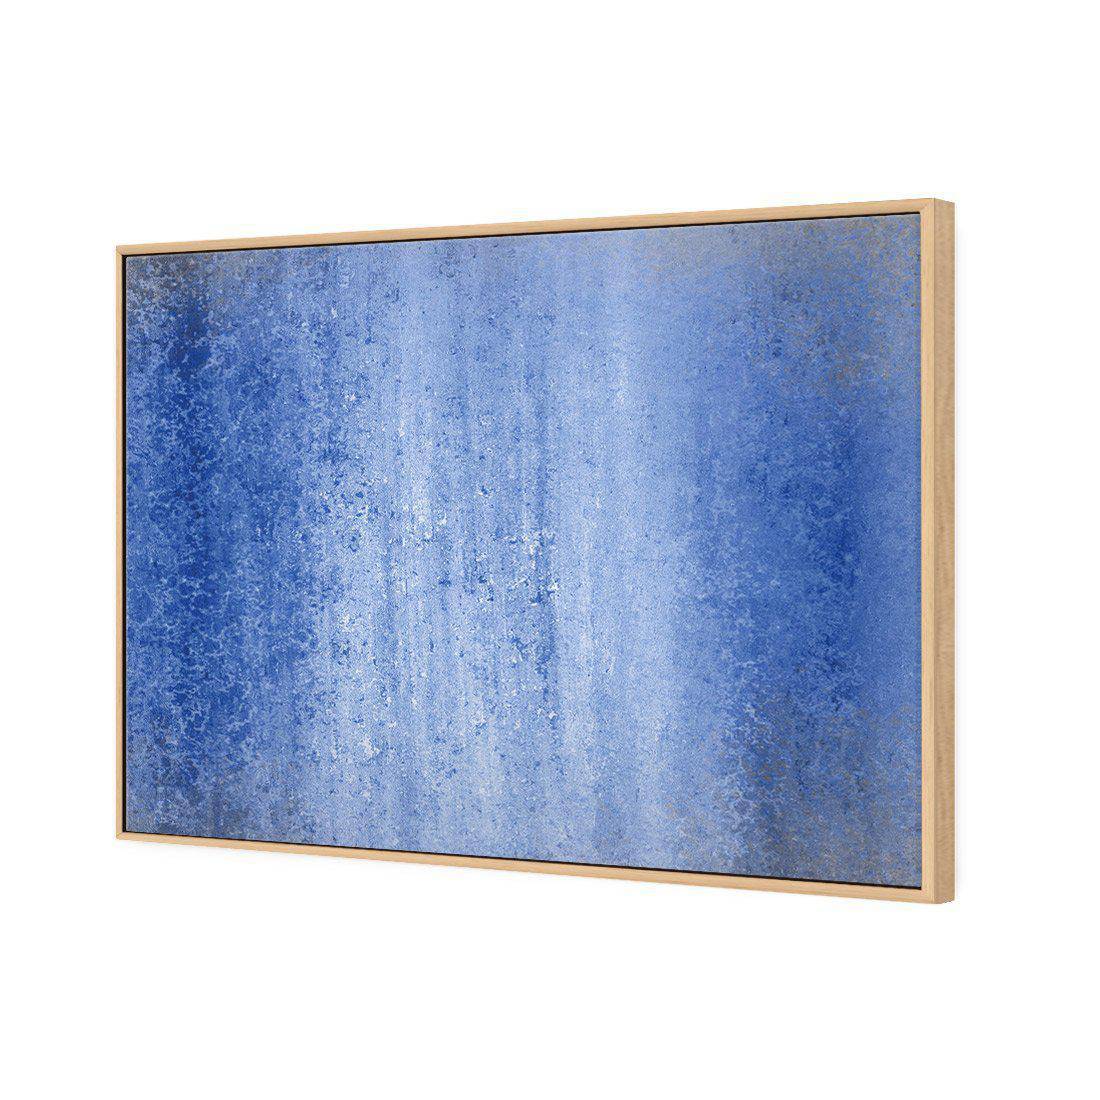 From Darkness Into Light, Blue Canvas Art-Canvas-Wall Art Designs-45x30cm-Canvas - Oak Frame-Wall Art Designs